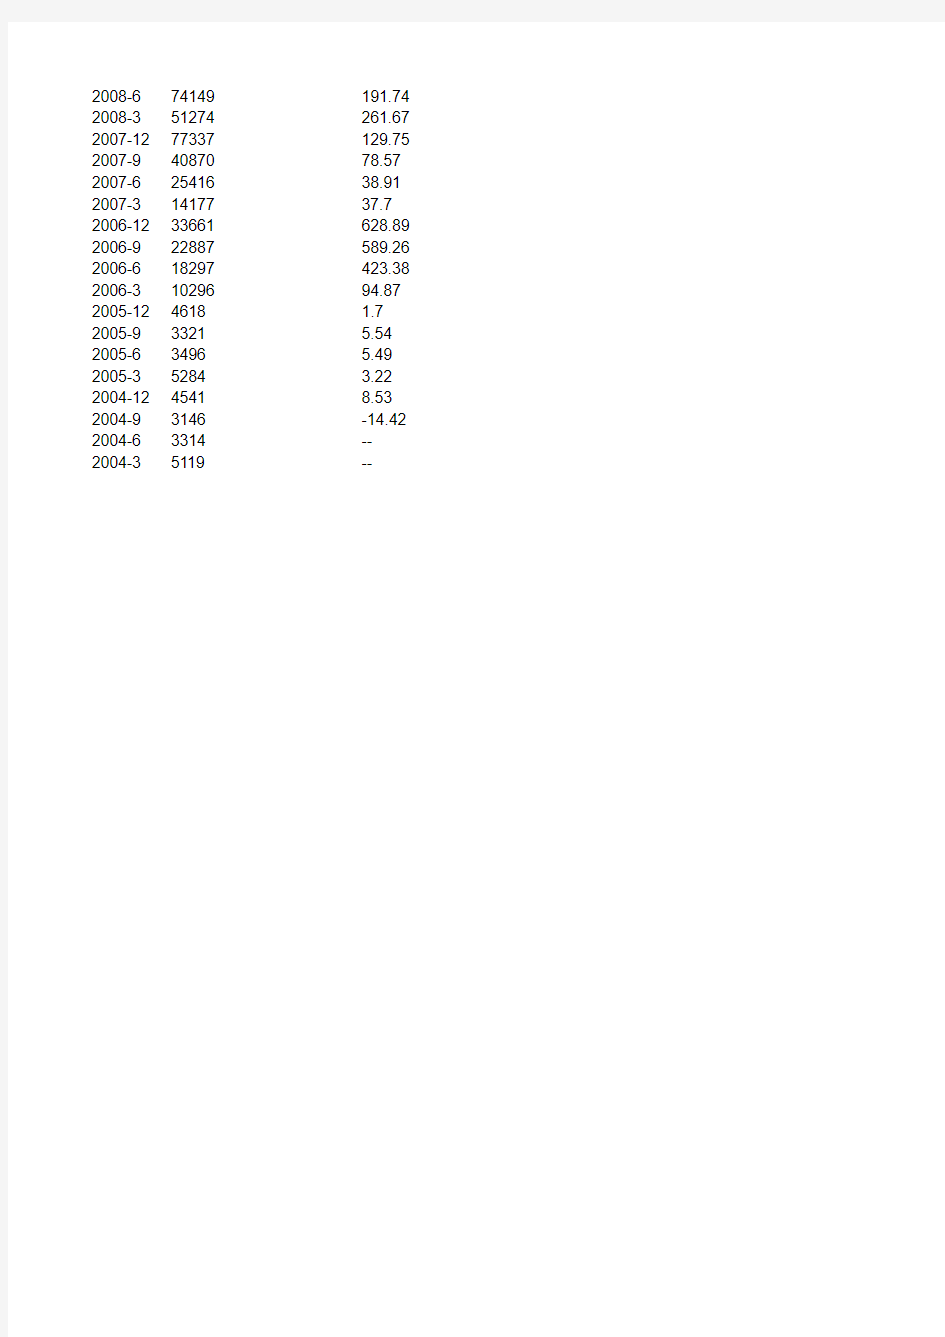 泸州老窖(000568)2004-2017年利润及营业收入表